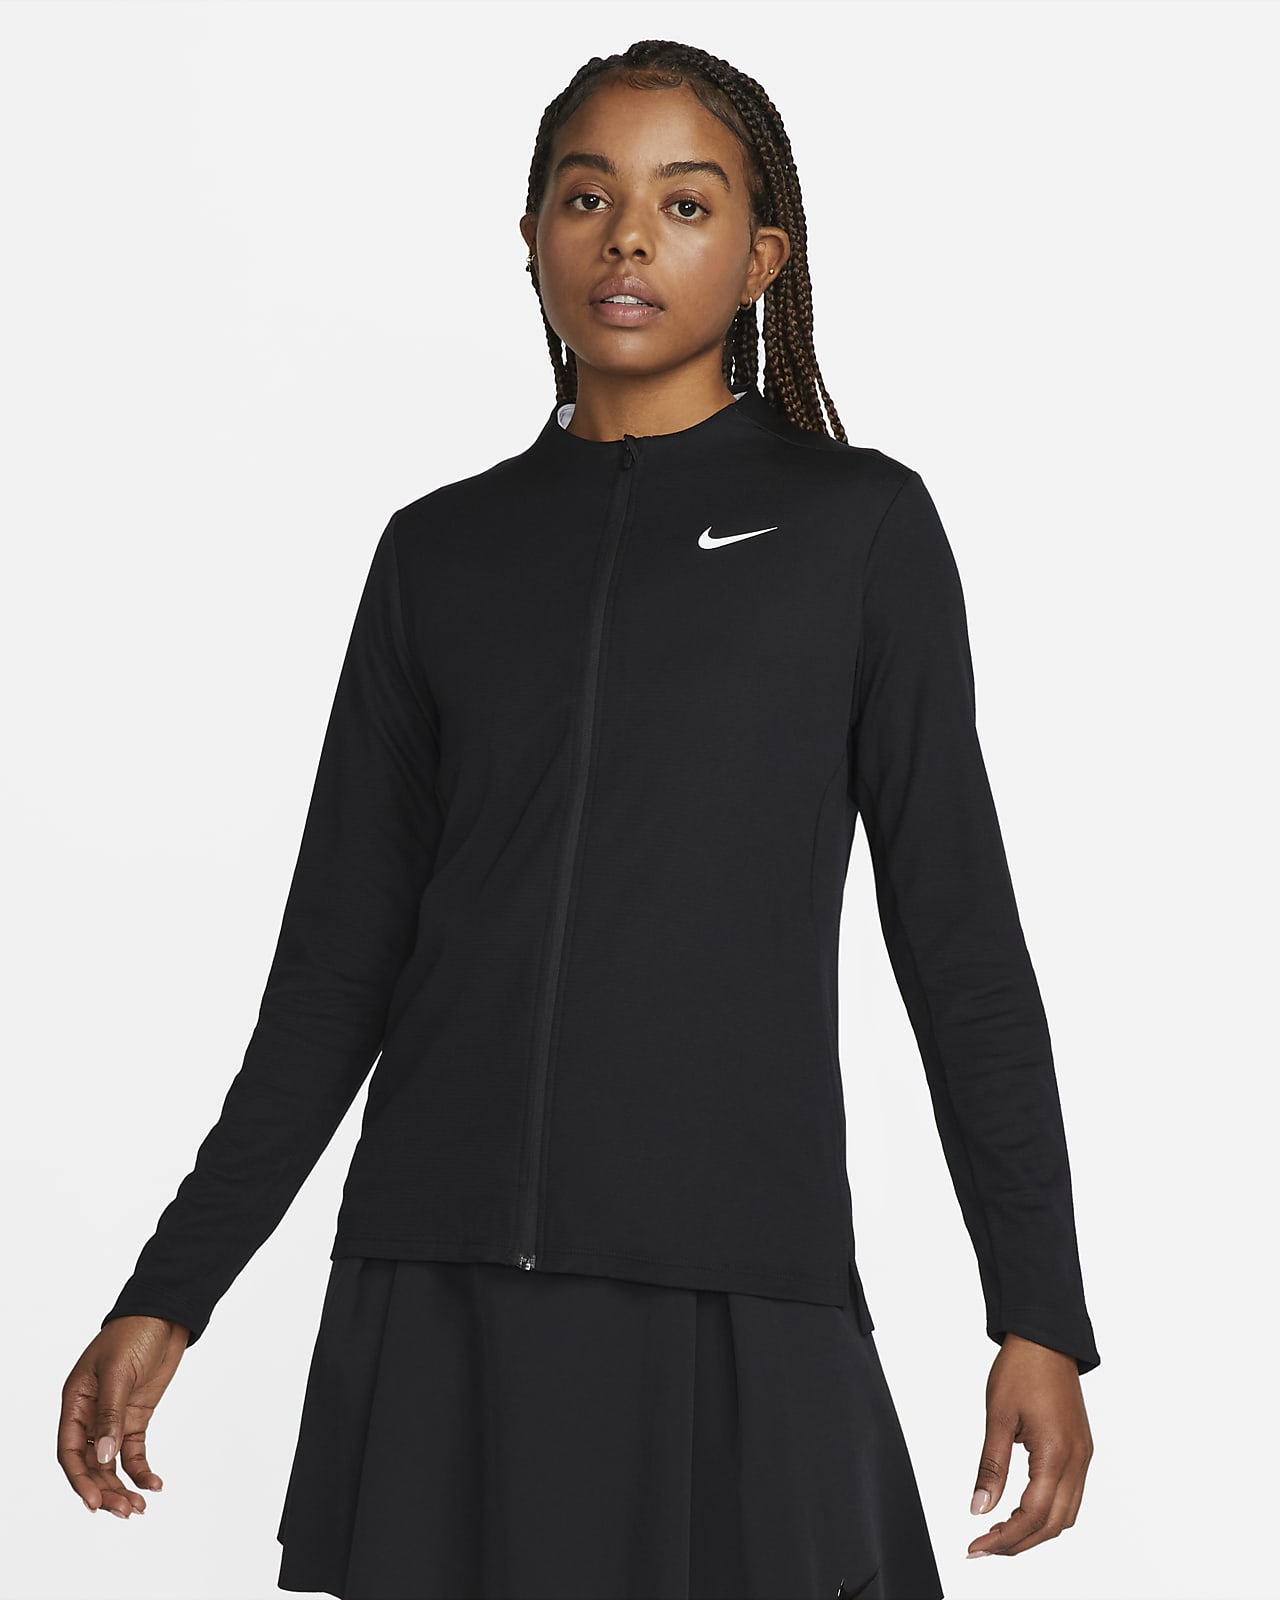 Dámský top Nike Dri-FIT UV Advantage se zipem po celé délce